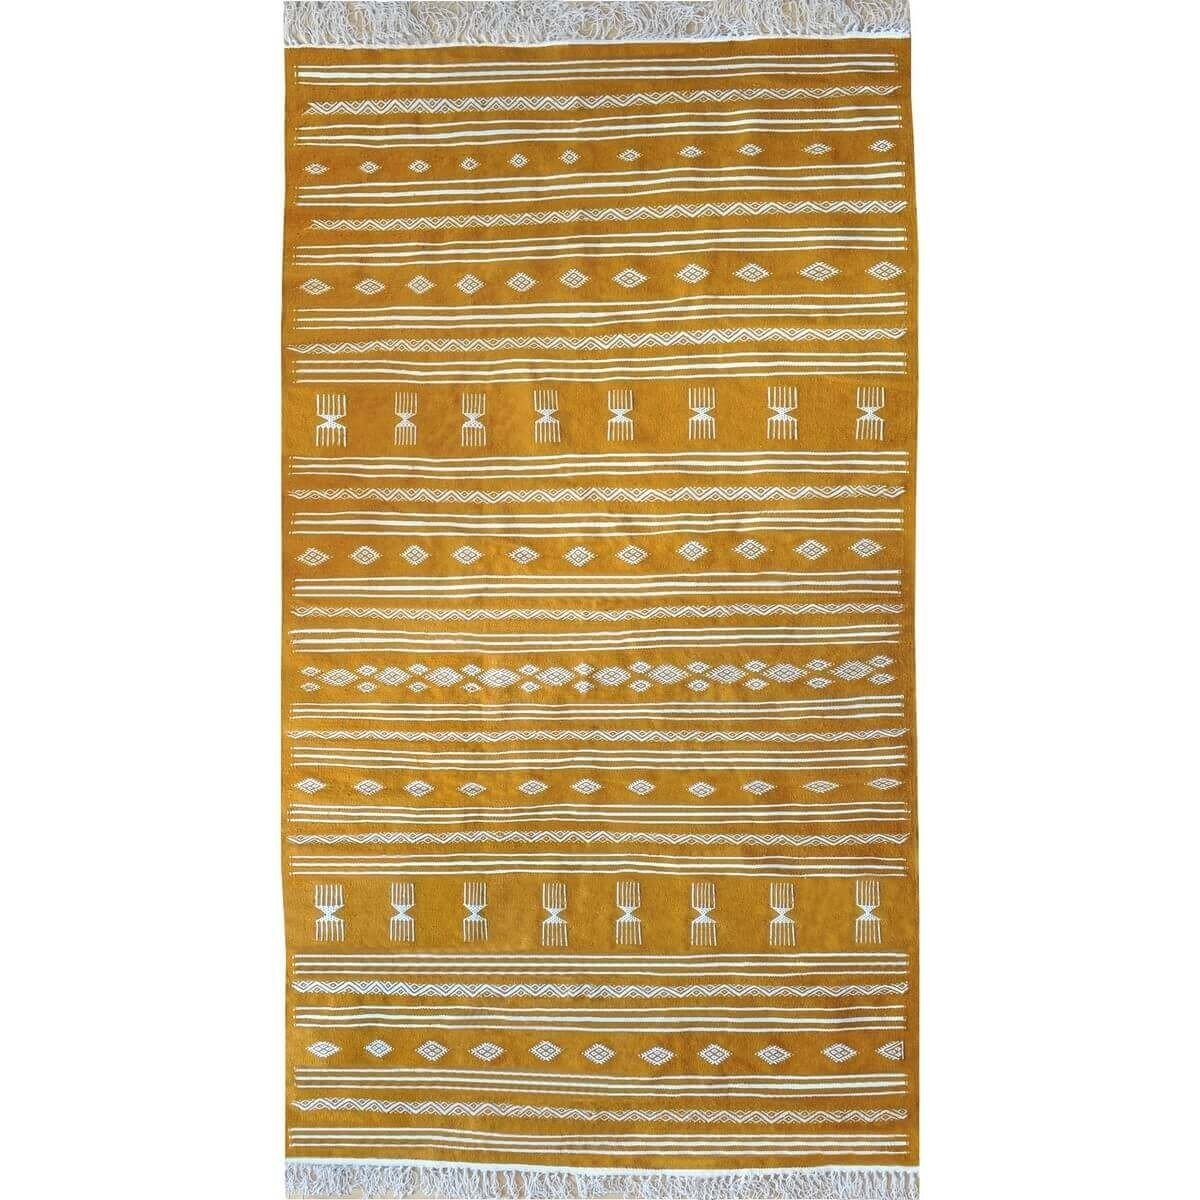 Berber Teppich Teppich Kelim Jawad 135x240 Gelb/Weiss (Handgewebt, Wolle) Tunesischer Kelim-Teppich im marokkanischen Stil. Rech